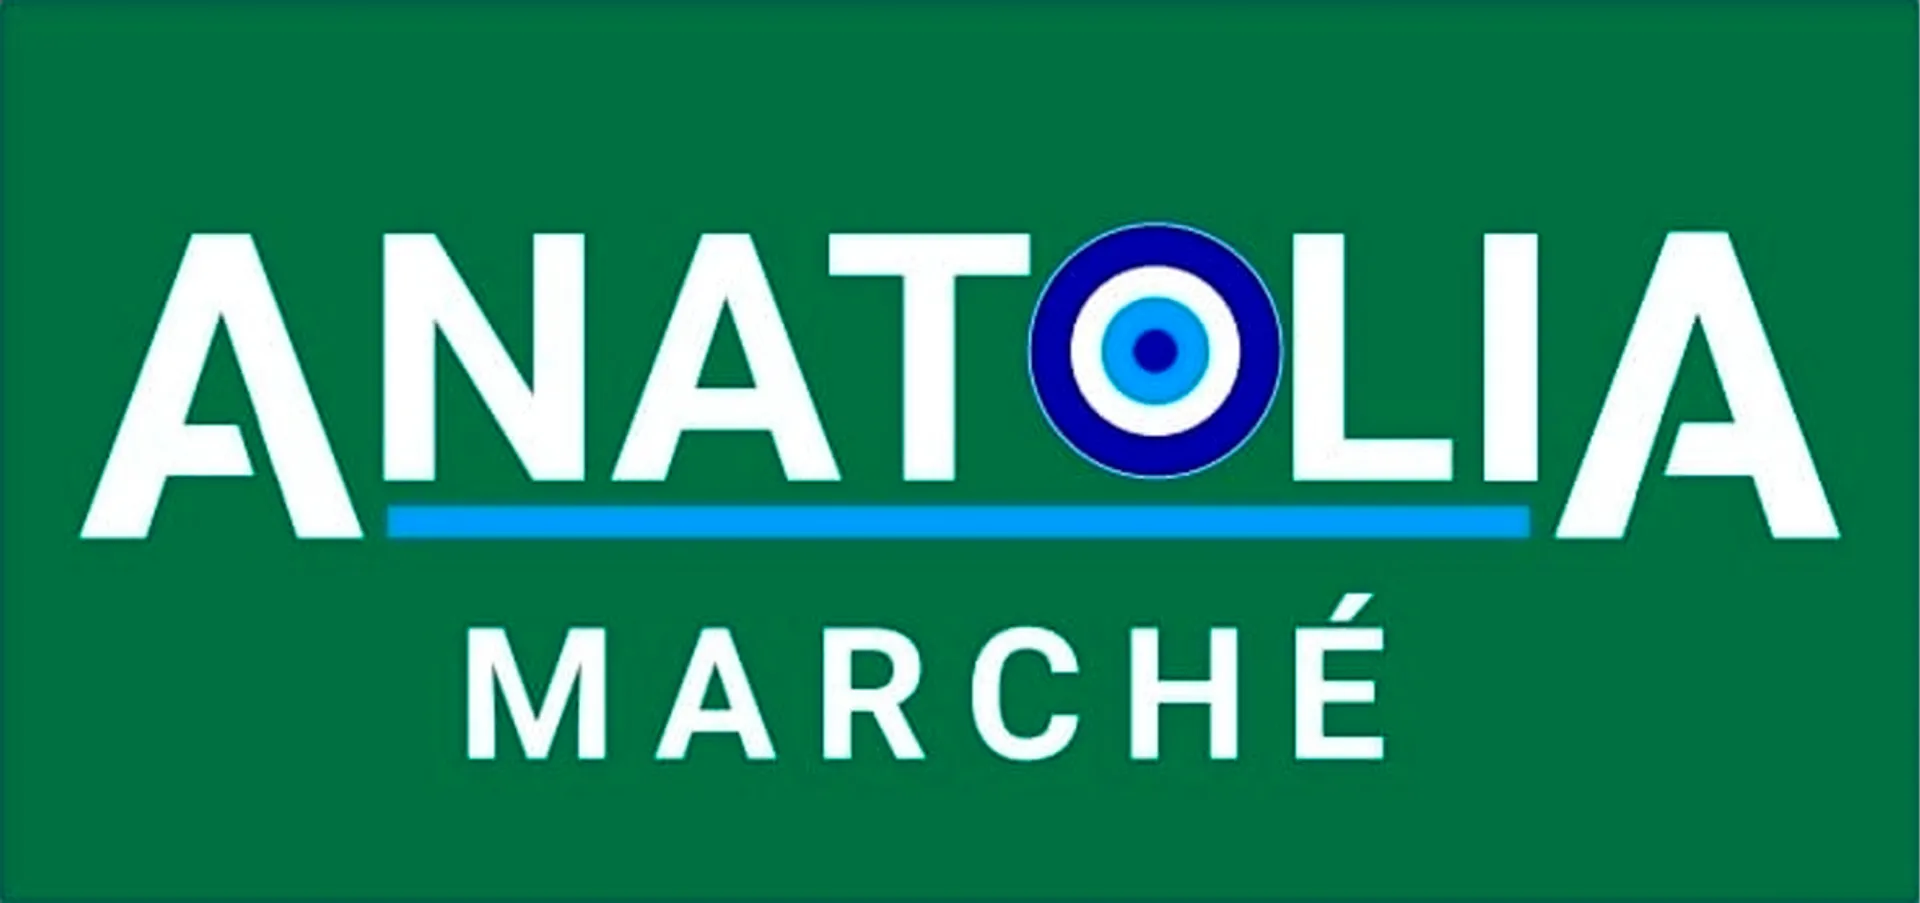 MARCHE ANATOLIA logo de circulaires